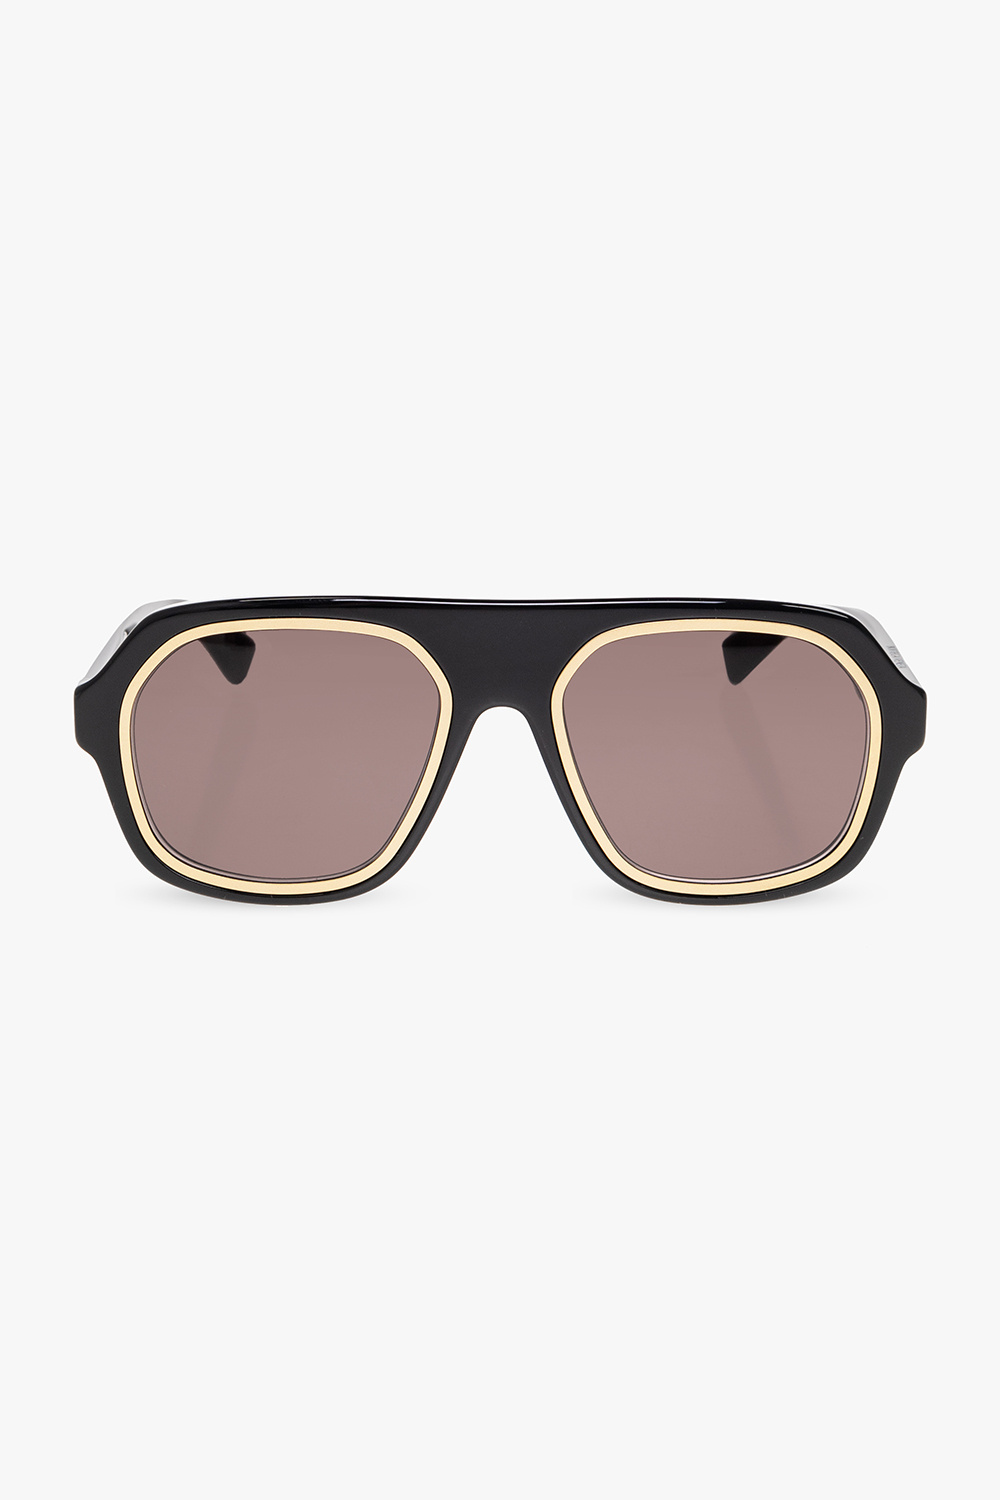 Bottega Veneta ‘Rim’ aviator sunglasses